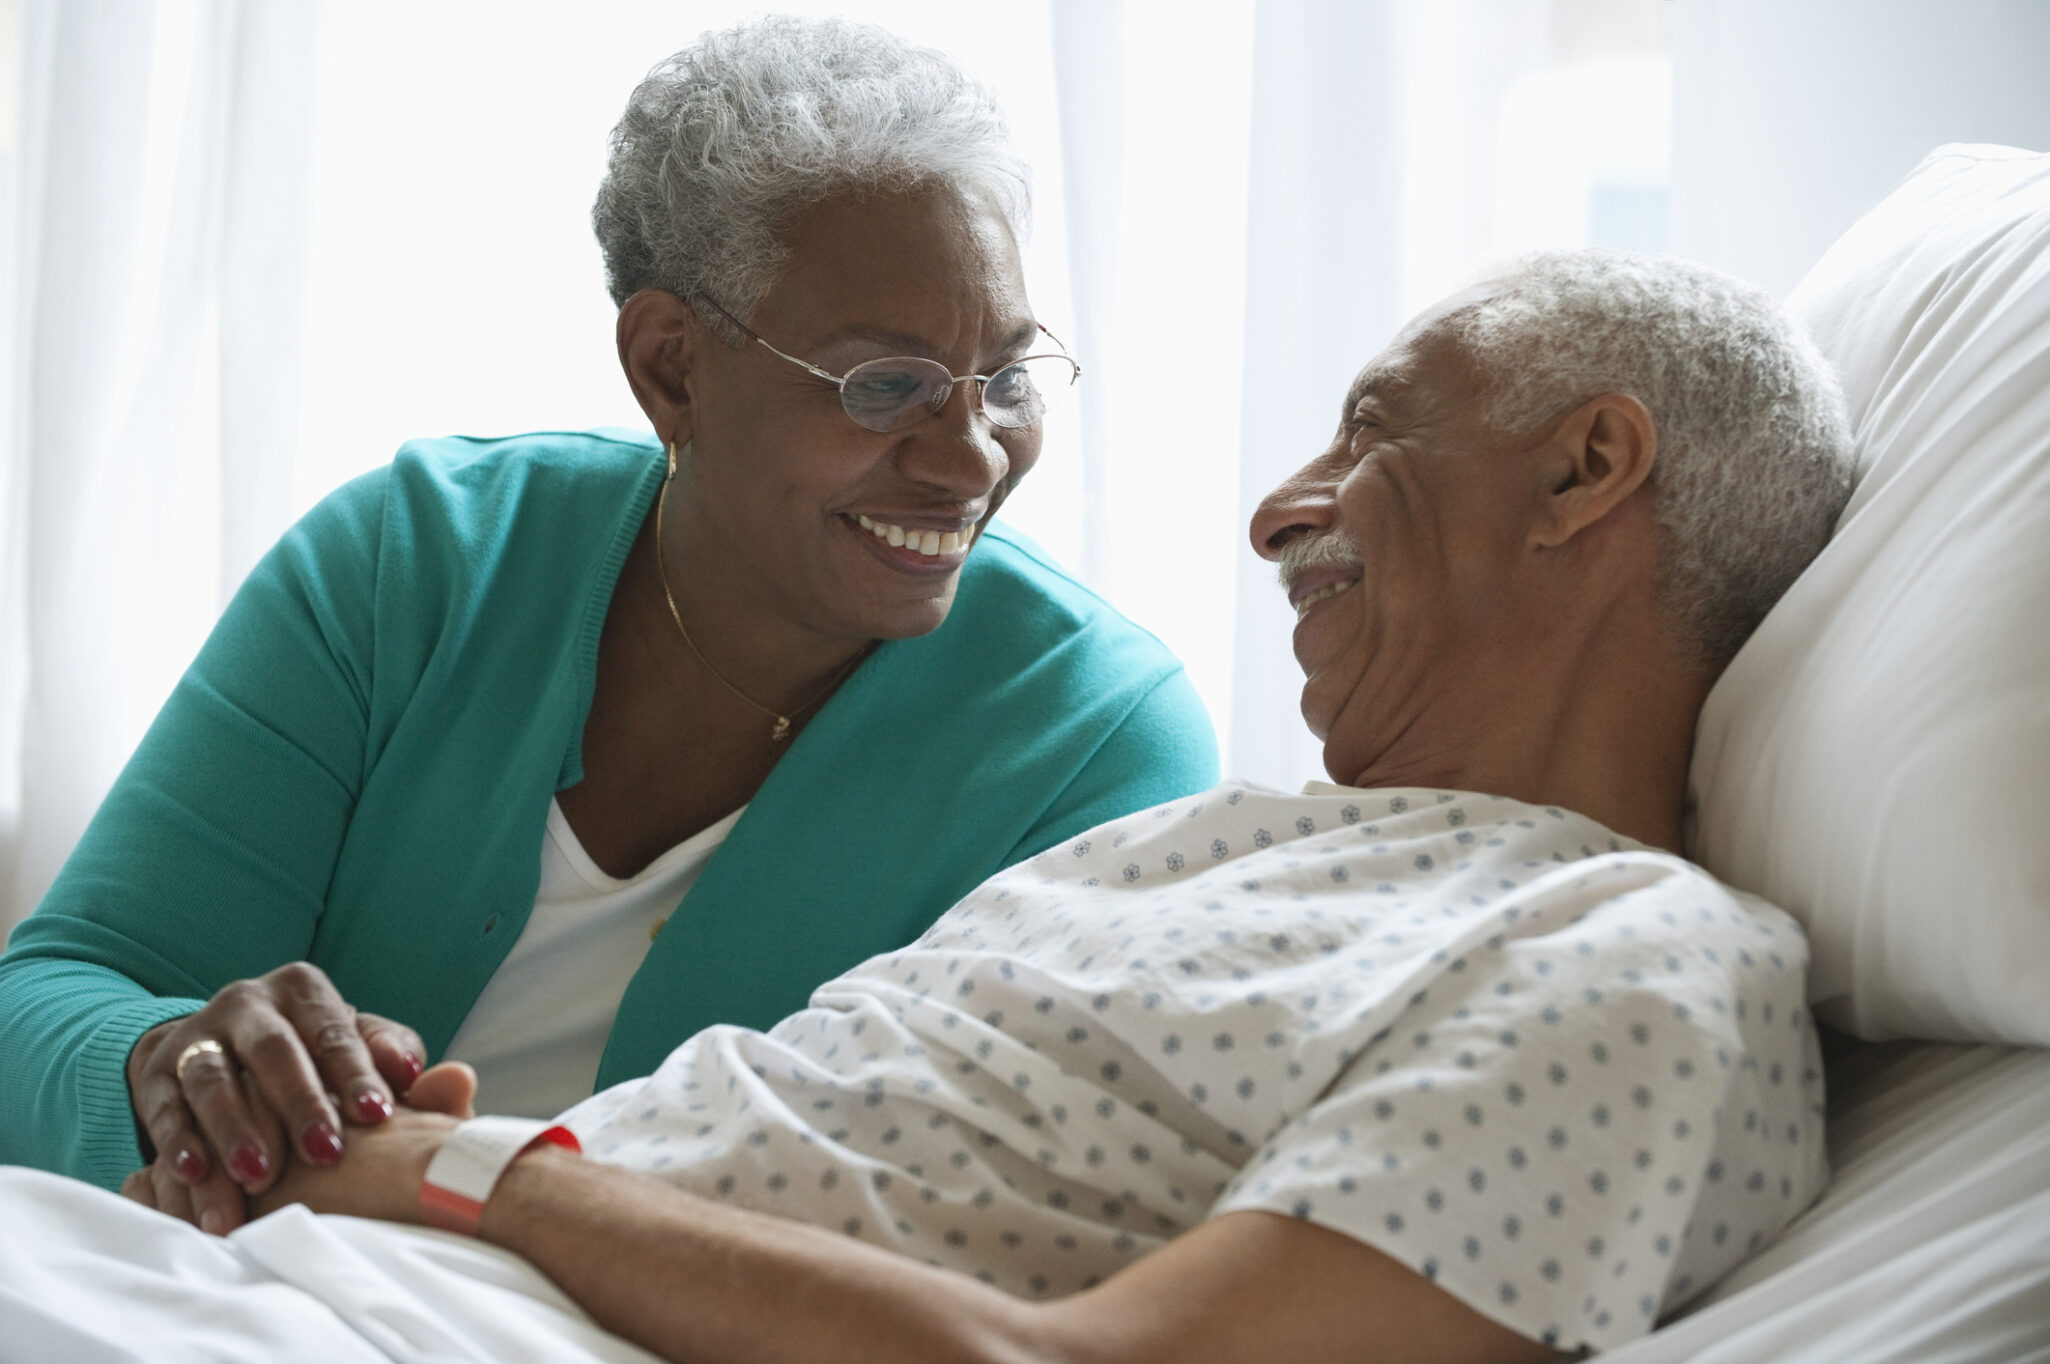 Elderly women keeping hospitalized husband company